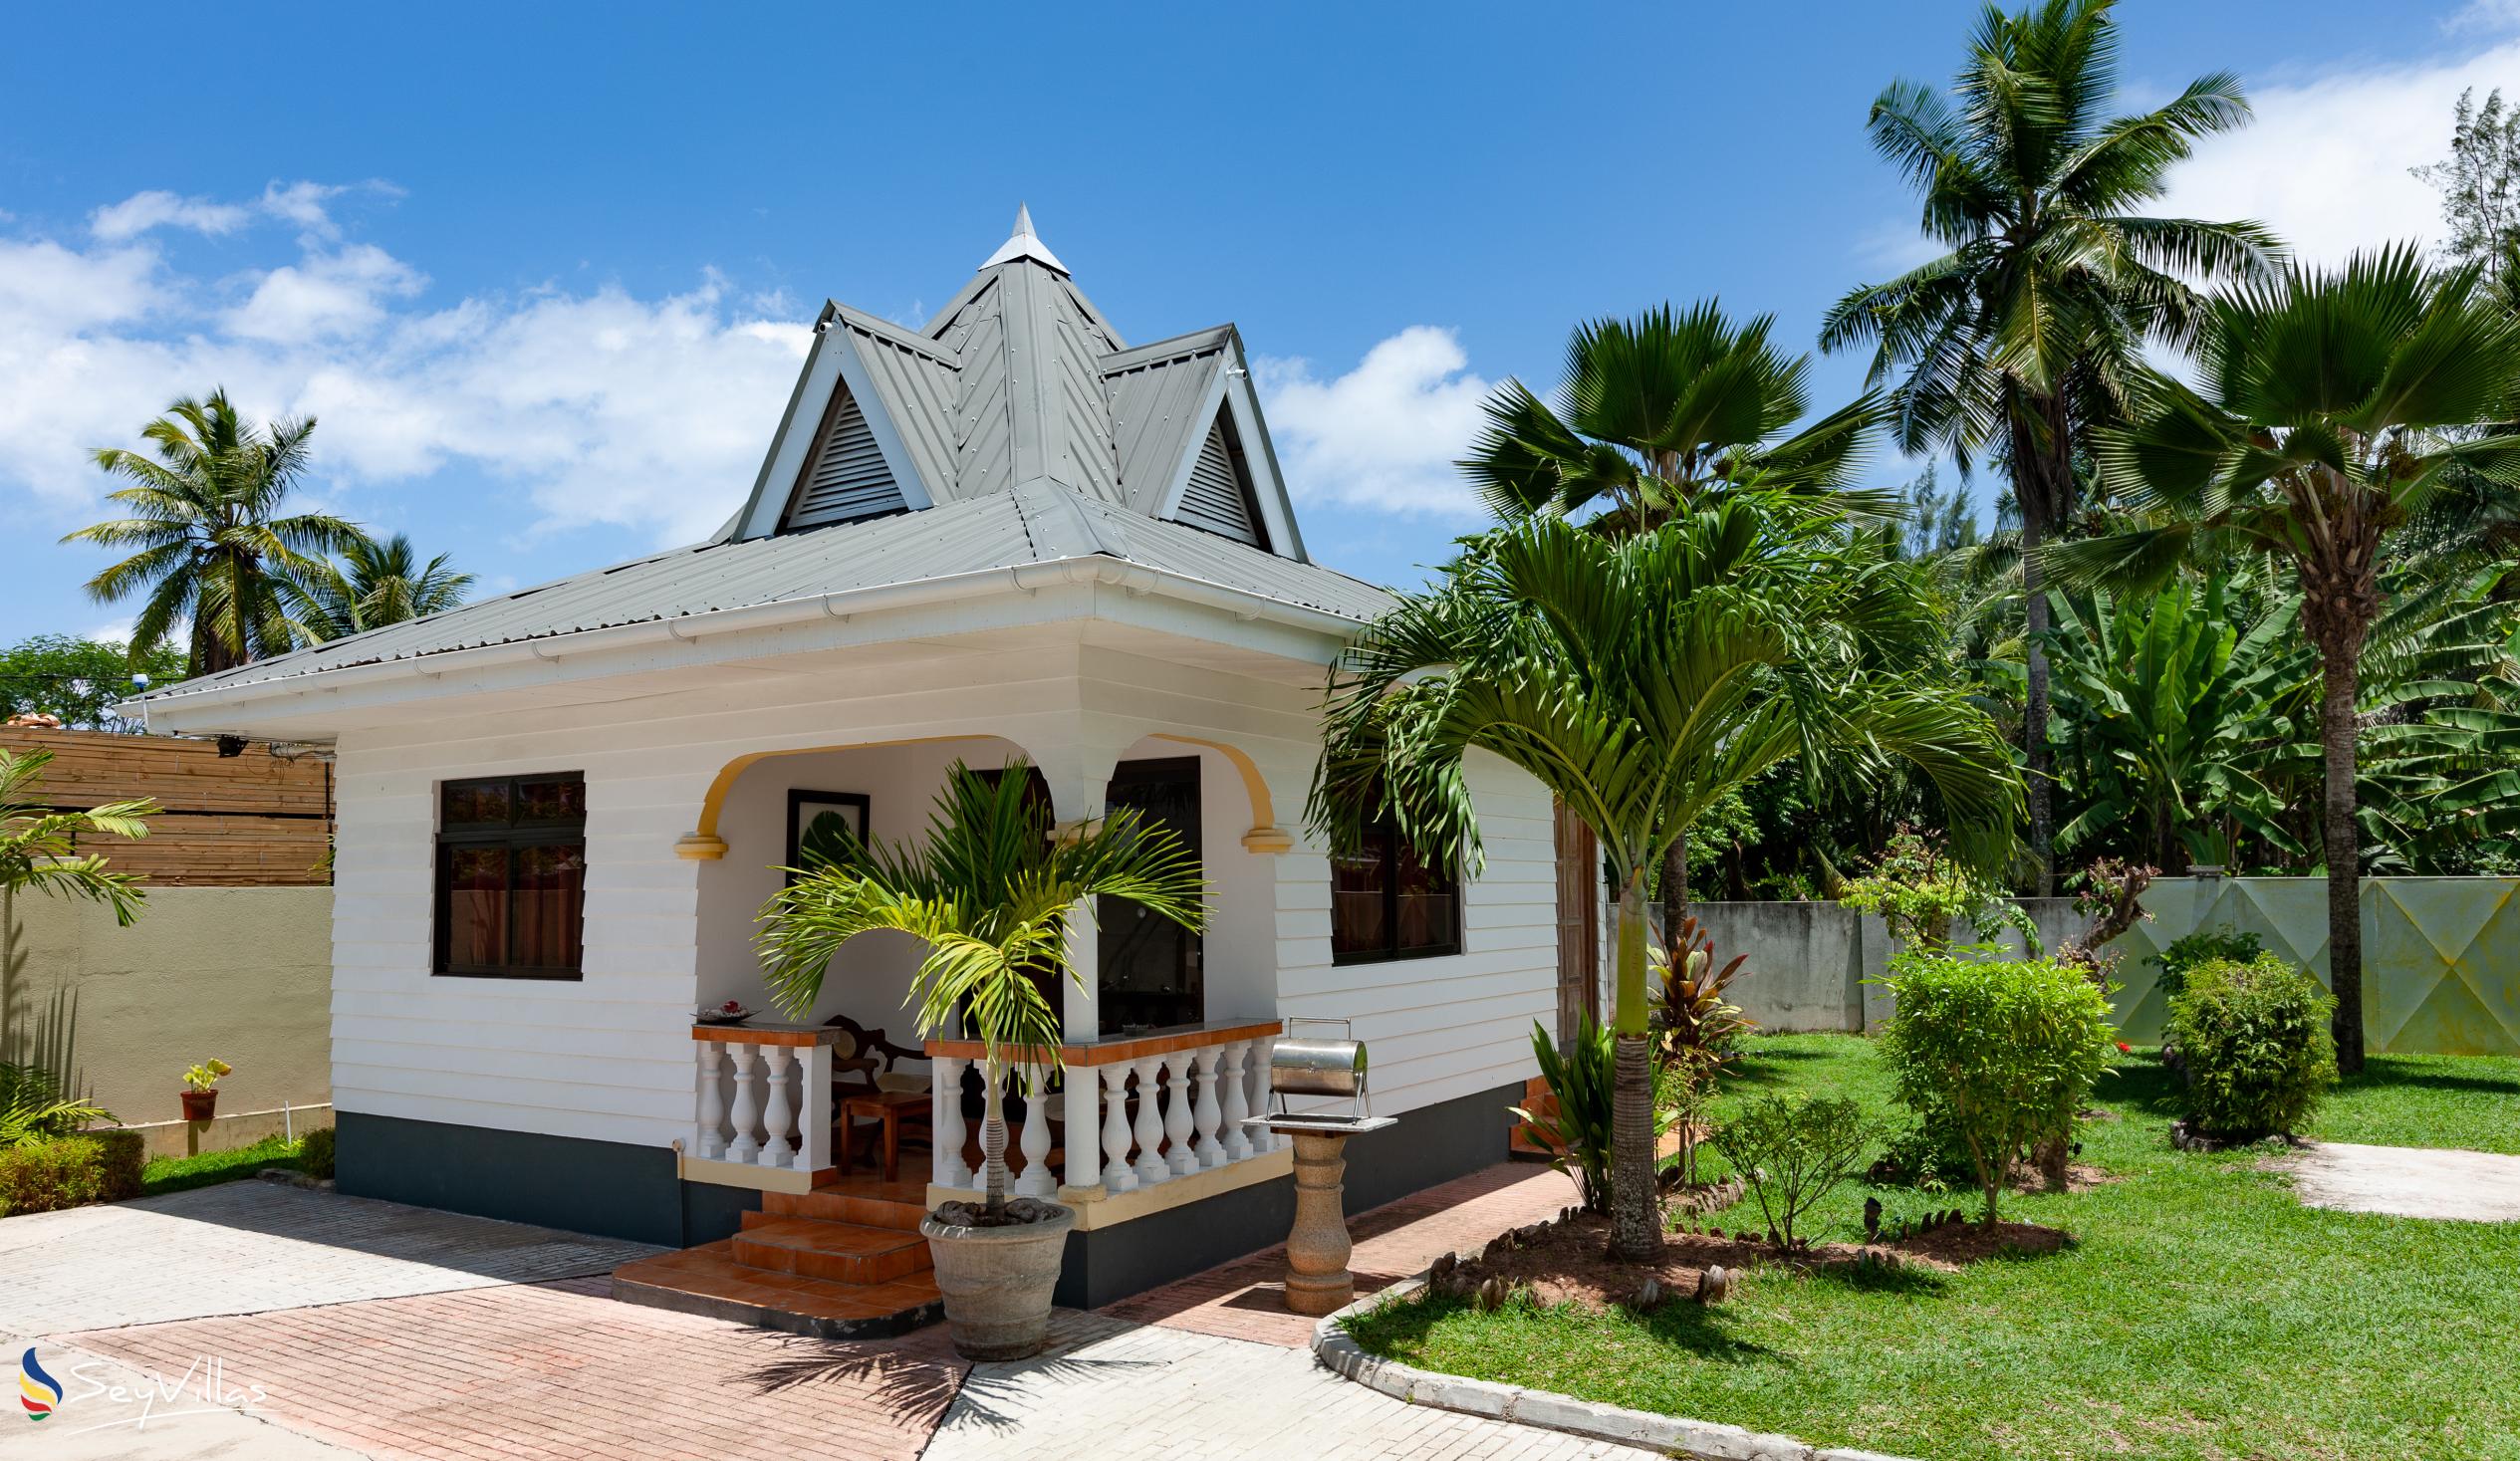 Photo 6: Villa Aya - Outdoor area - Praslin (Seychelles)